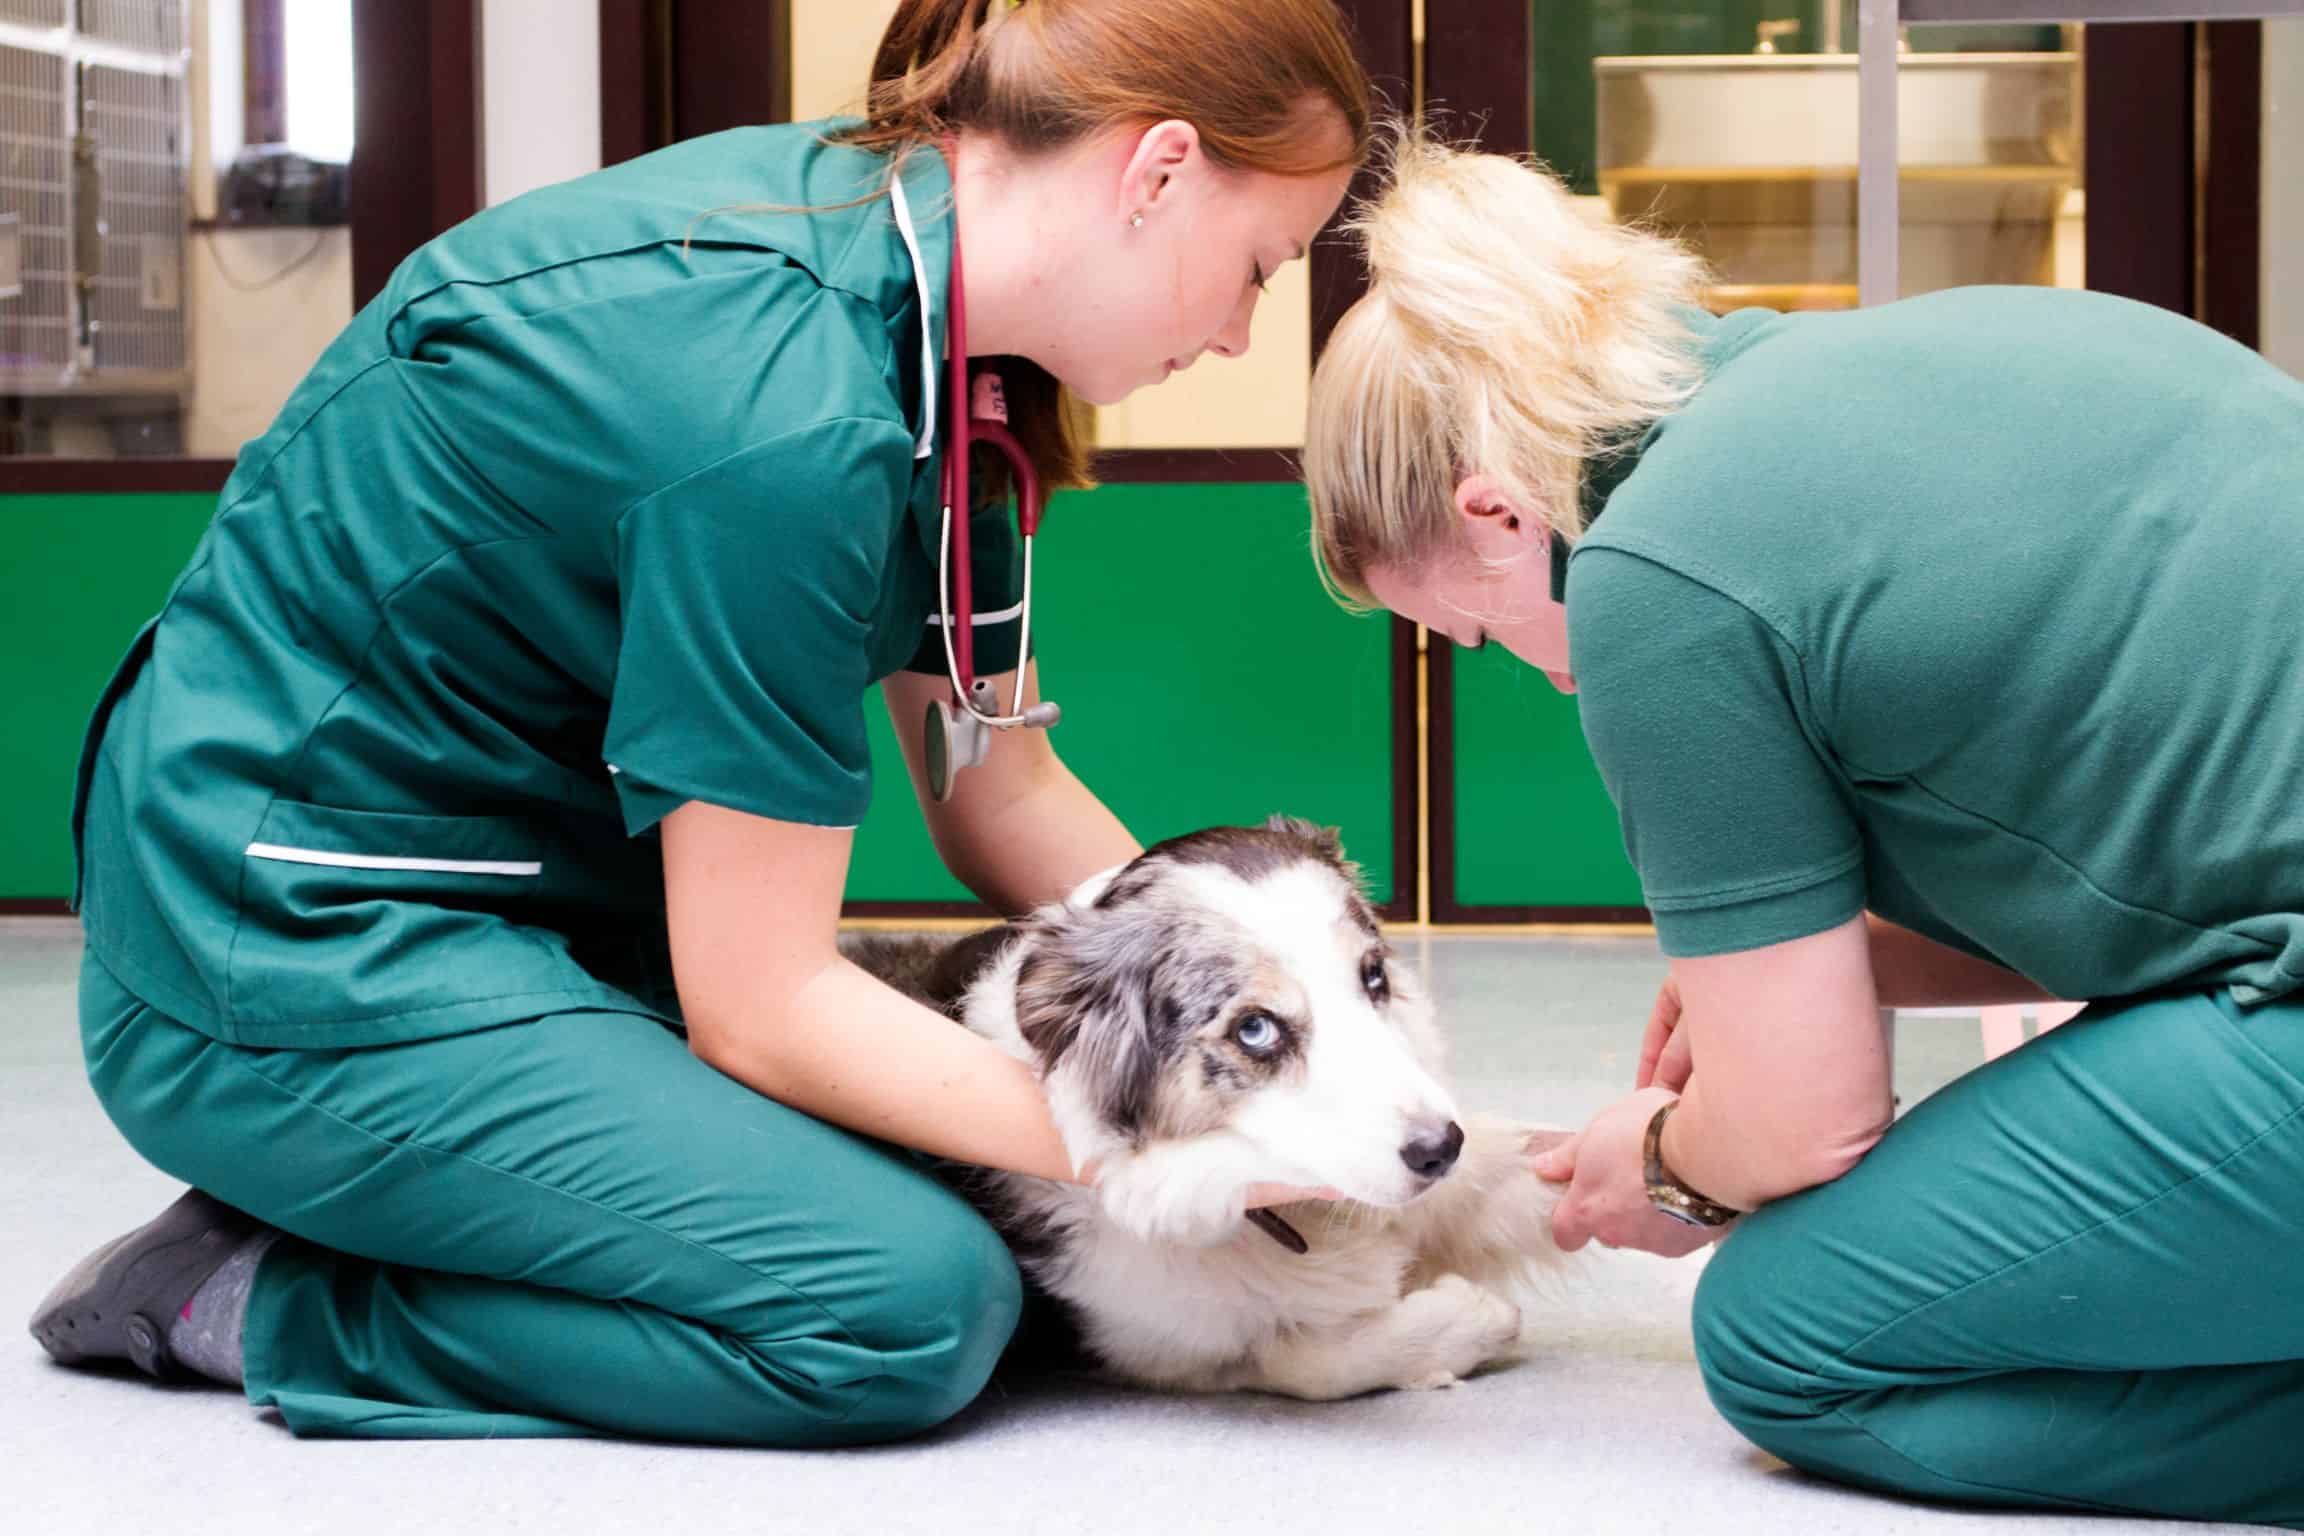 veterinarians in action